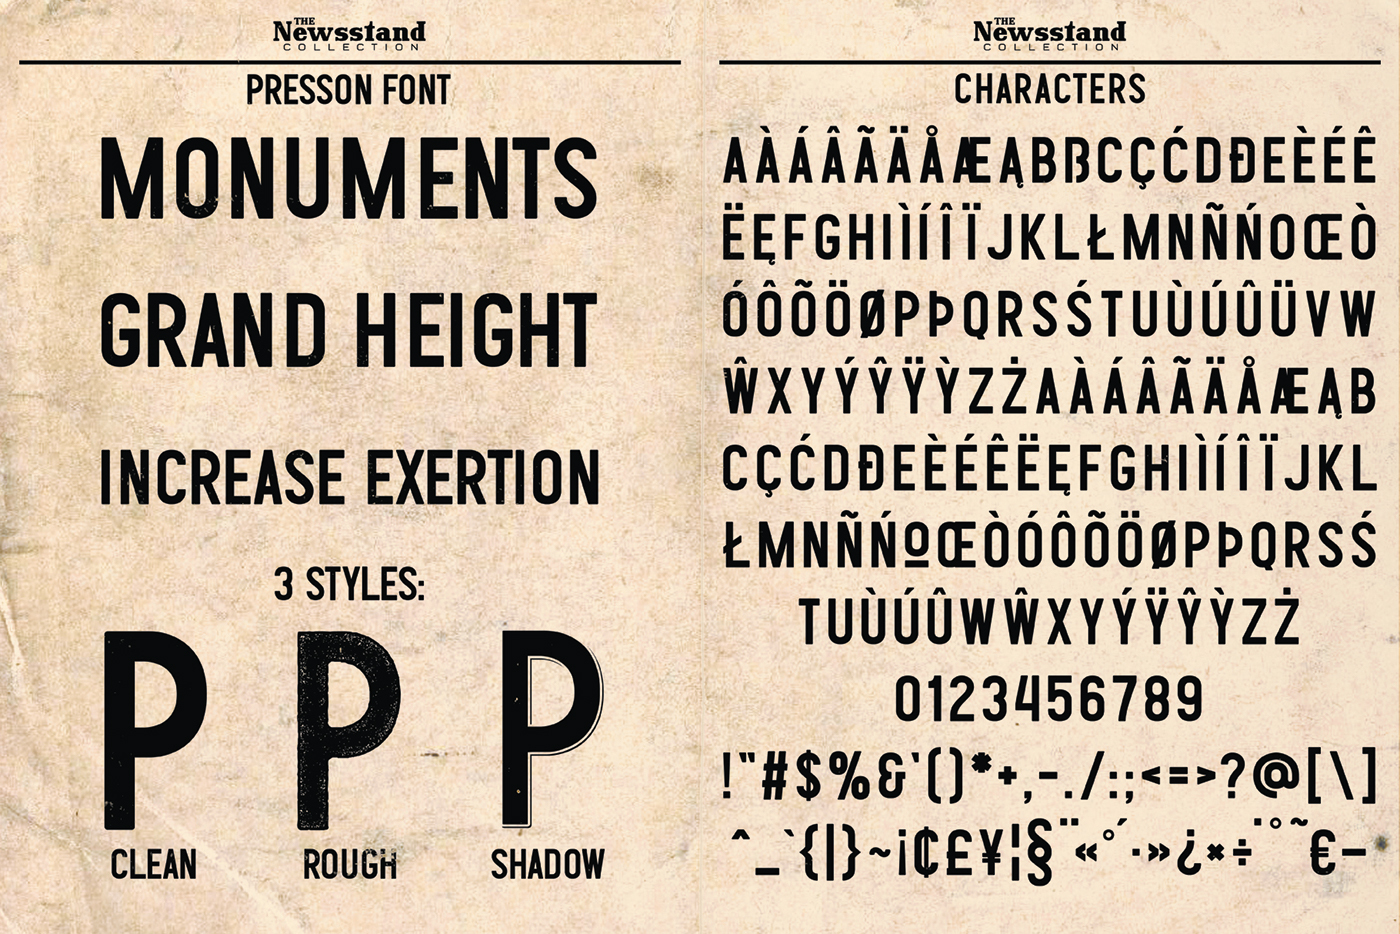 font Display stamp display font logo vintage Retro newspaper Header